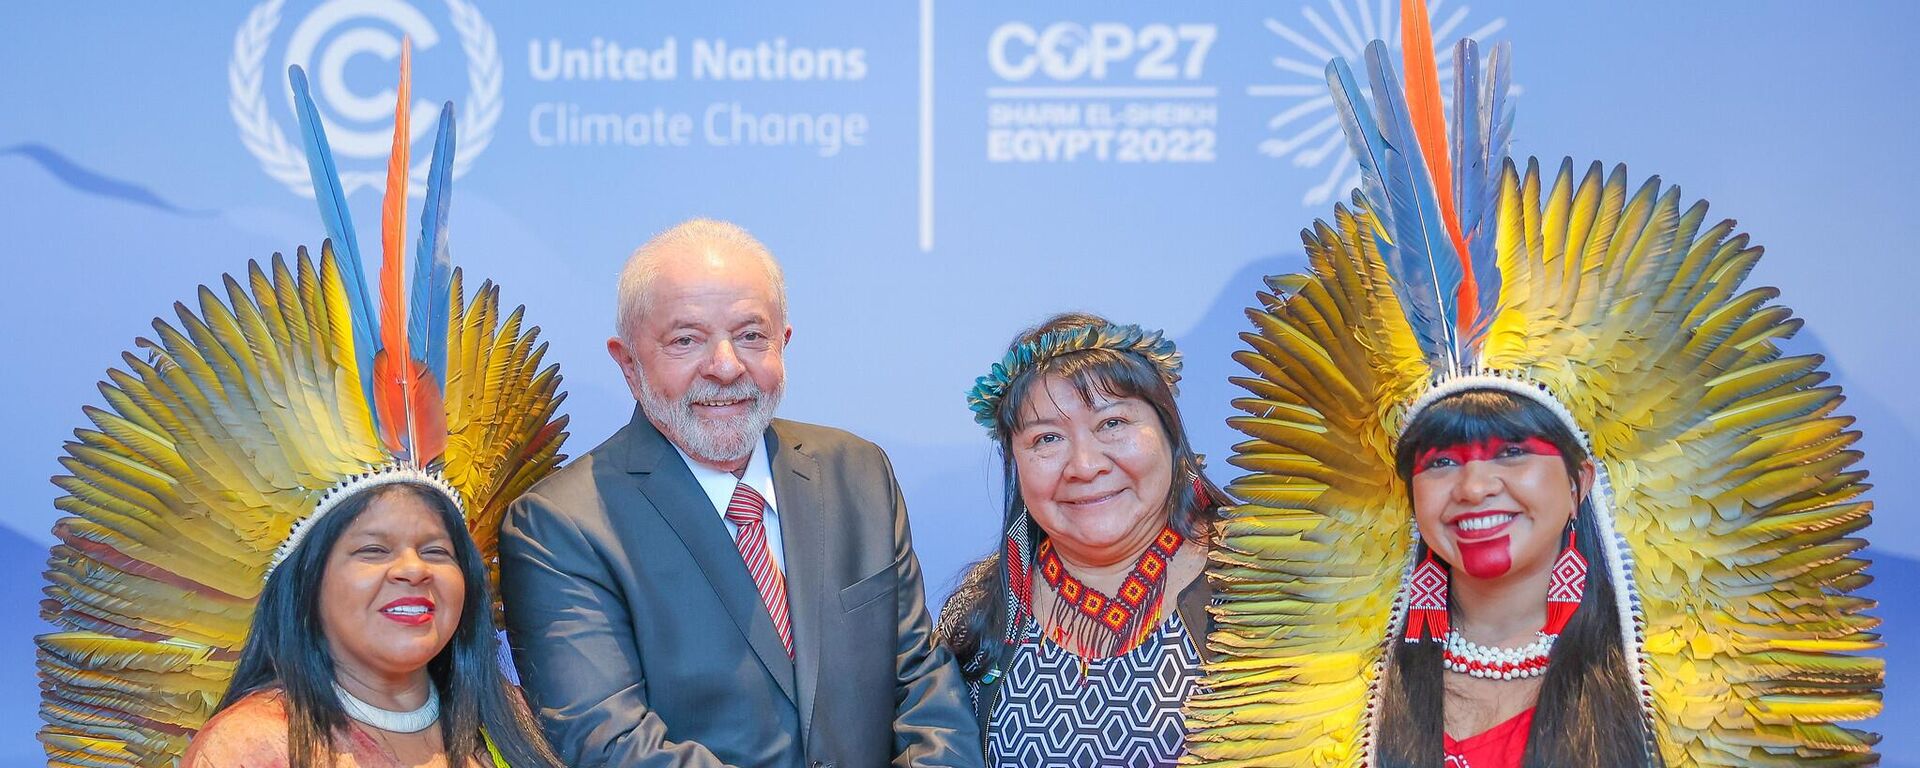 O ex-presidente Luiz Inácio Lula da Silva posa com lideranças indígenas na Conferência das Nações Unidas sobre Mudança Climática de 2022 (COP27), no Egito, após ser eleito, em 17 de novembro de 2022 - Sputnik Brasil, 1920, 27.12.2022